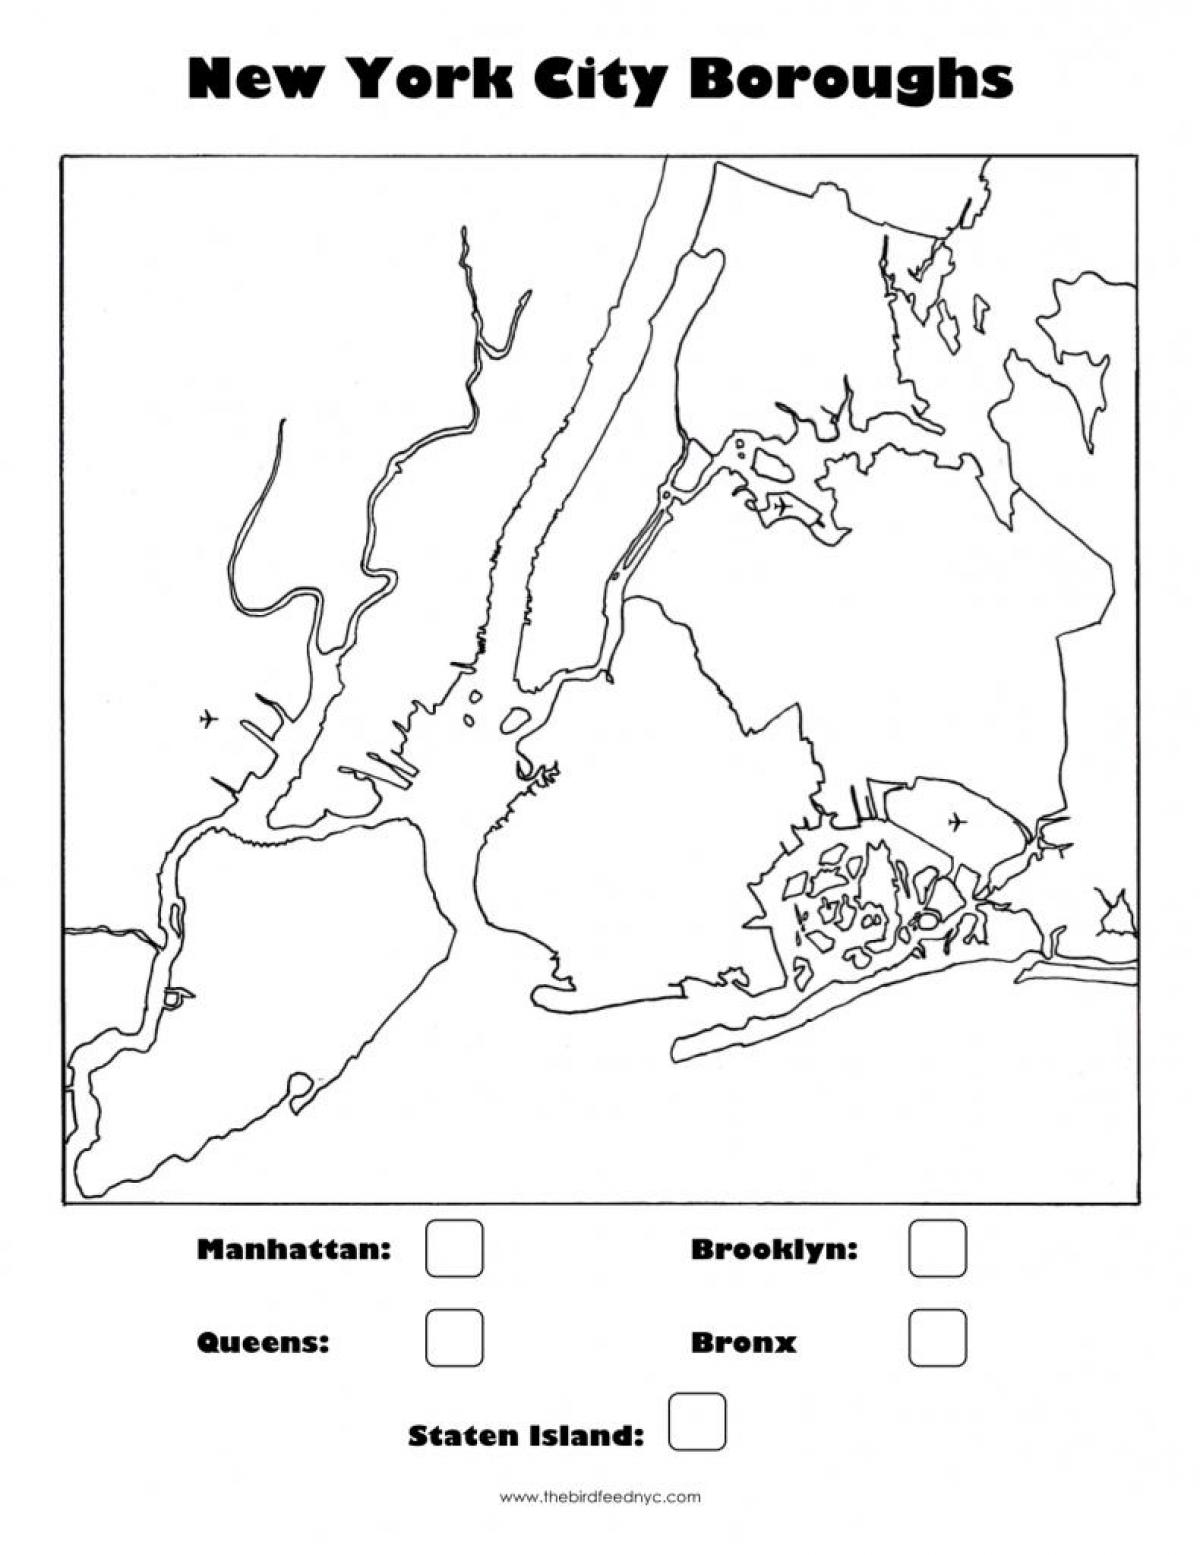 бланковой mapie Nowego Jorku